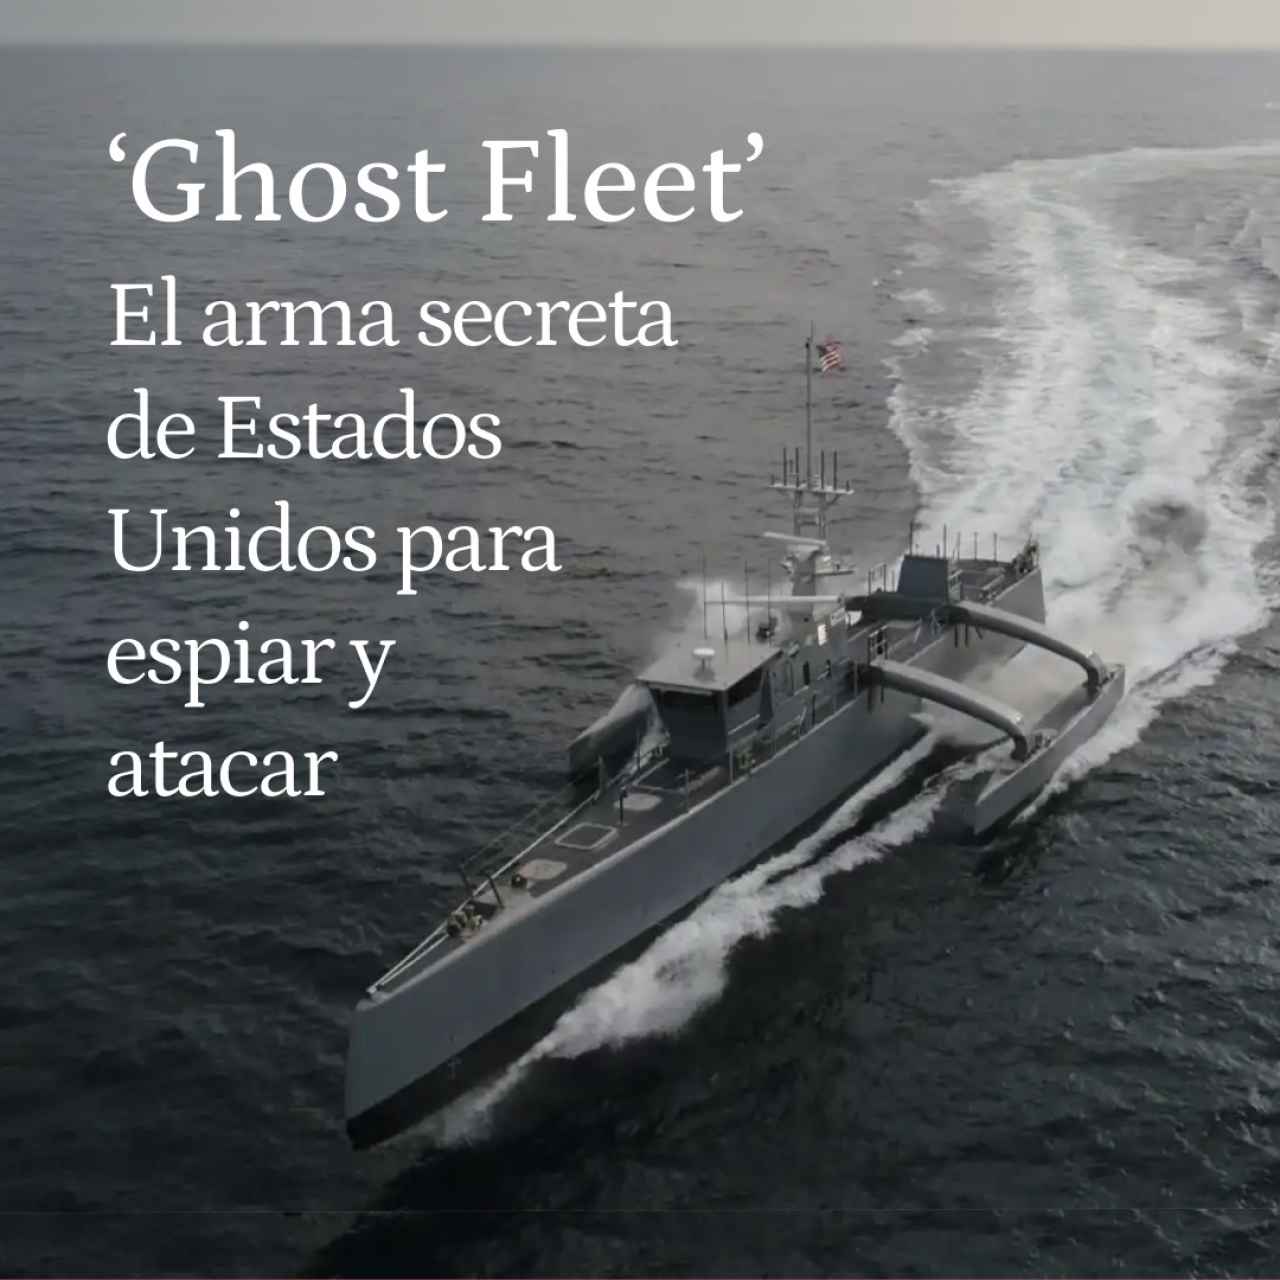 Así es la Flota Fantasma del ejército de EEUU: buques no tripulados para espiar y atacar